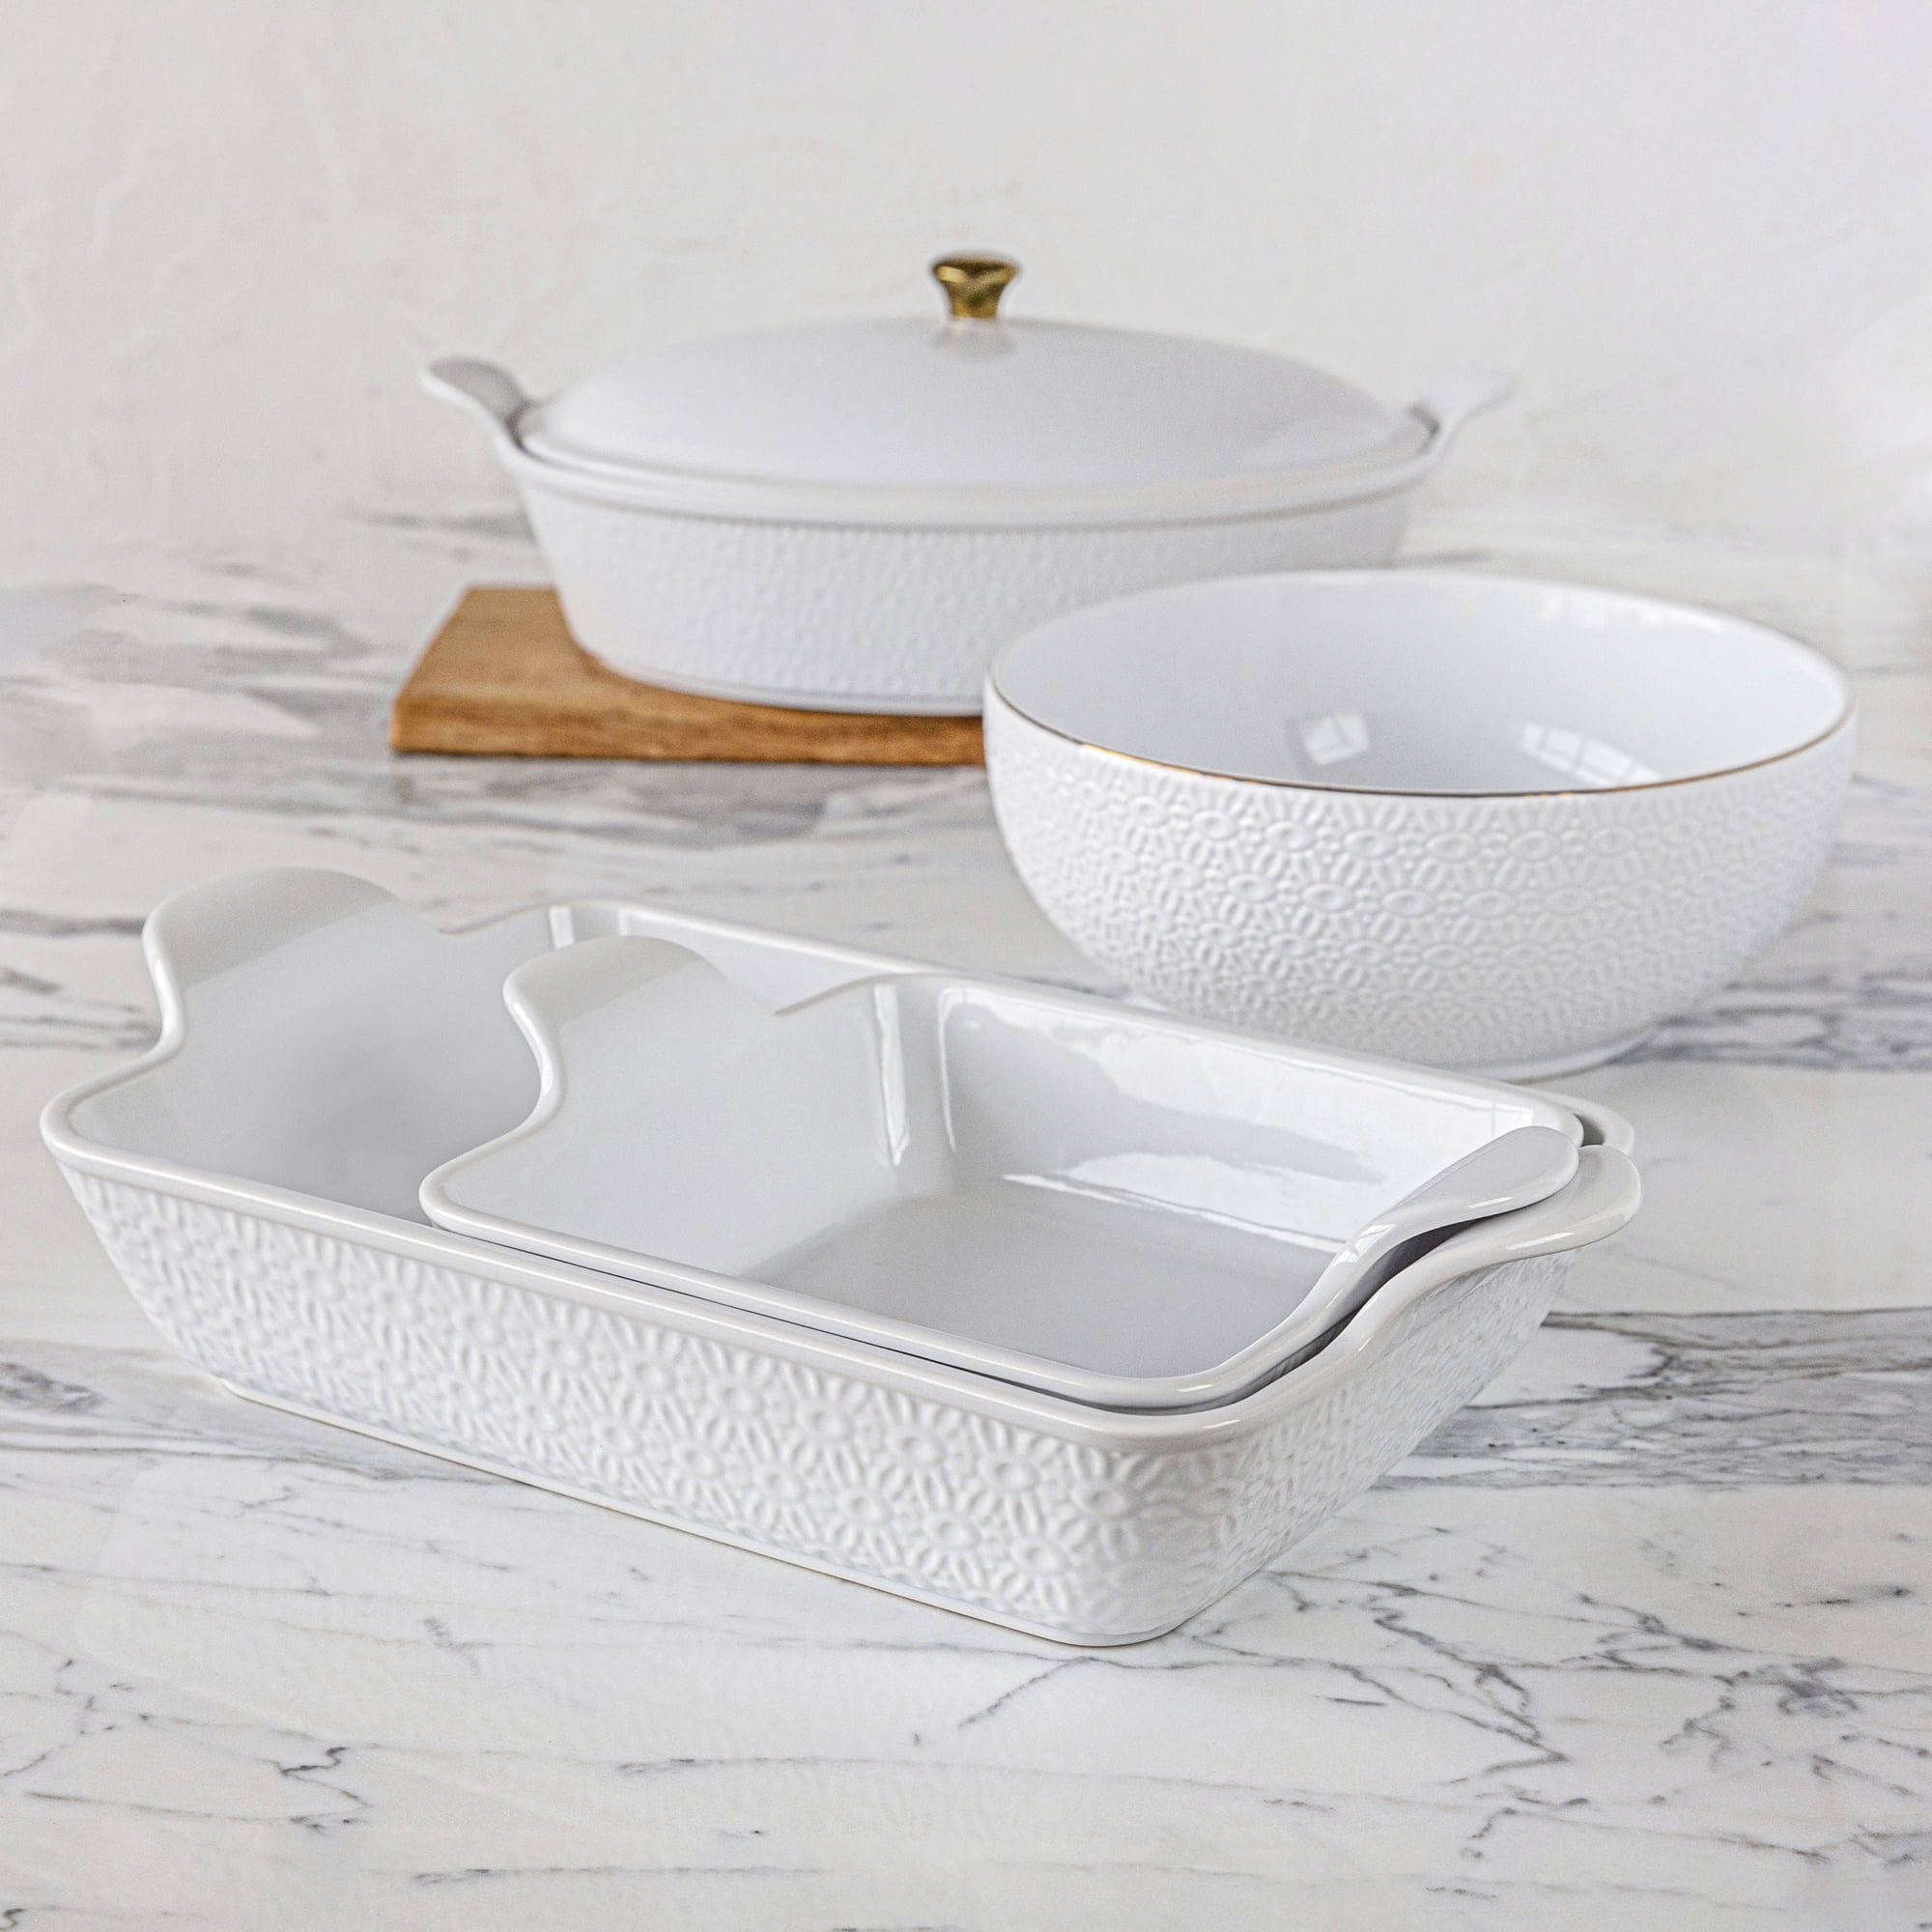 Lareina Bakeware Set, Ceramic Baking Dish, Rectangular Baking Pans Set –  Lareina Life